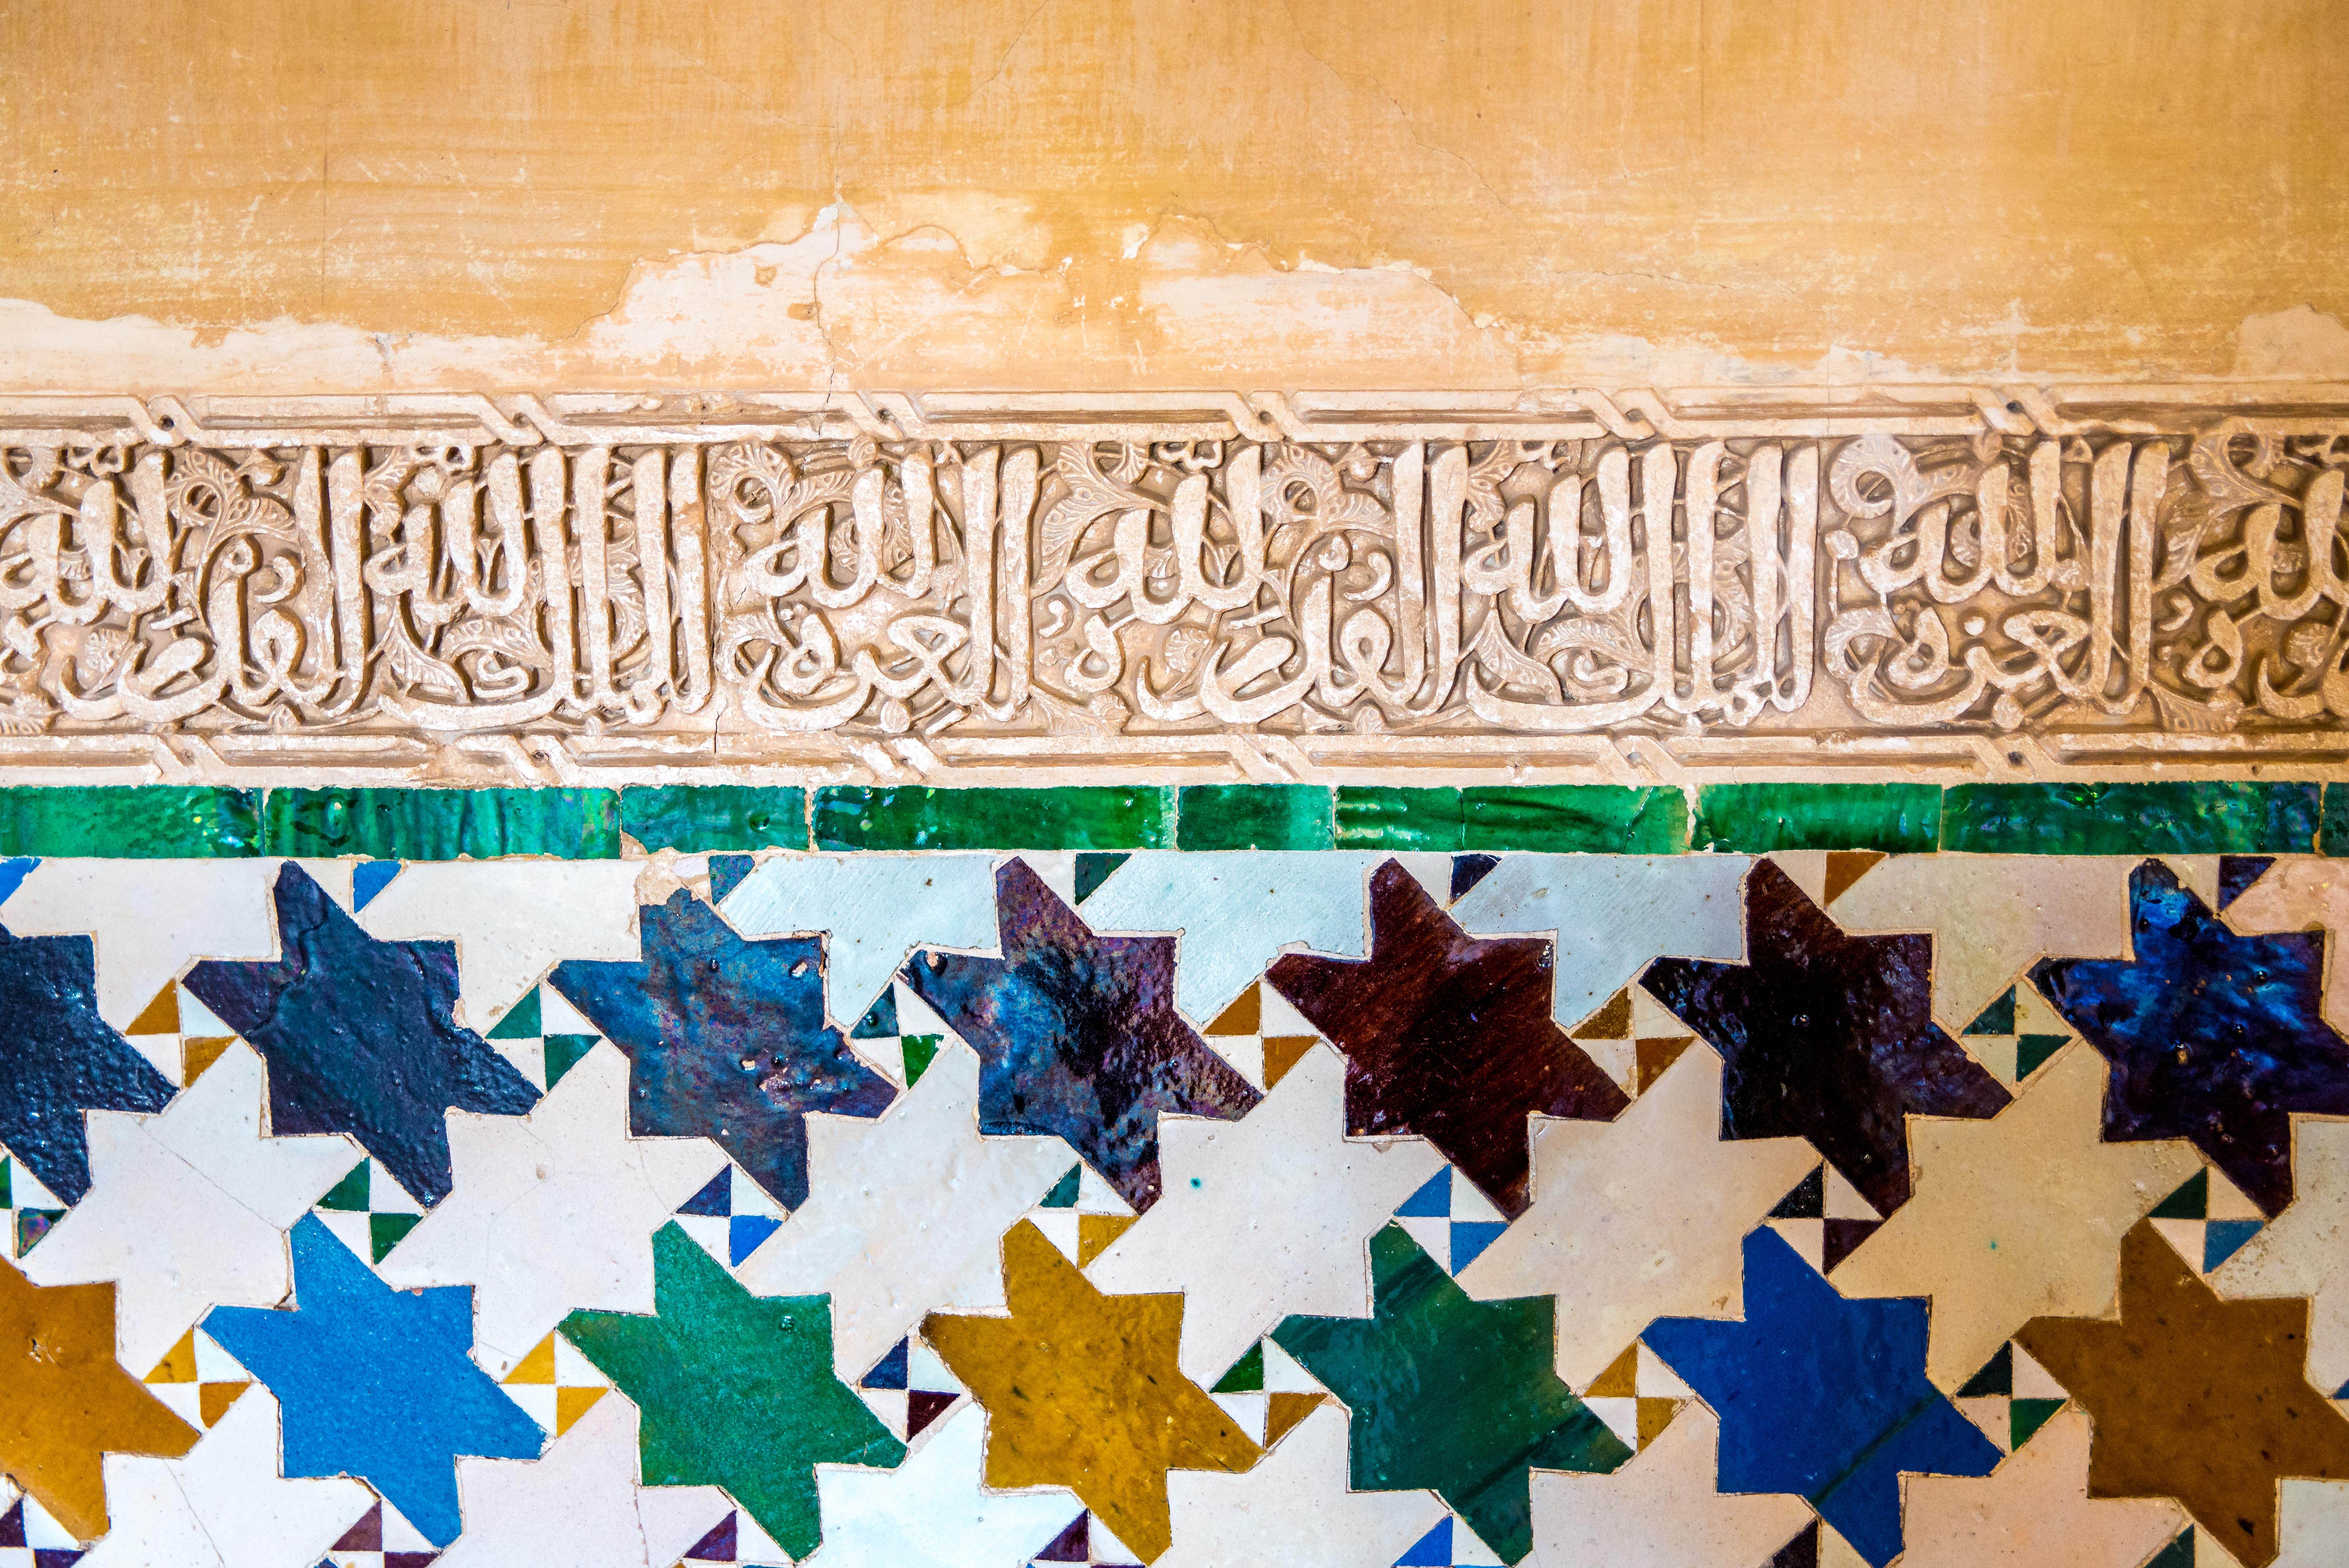 Visiter l’Alhambra à Grenade Alhambra Grenade Andalousie Espagne Blog Voyage Icietlabas